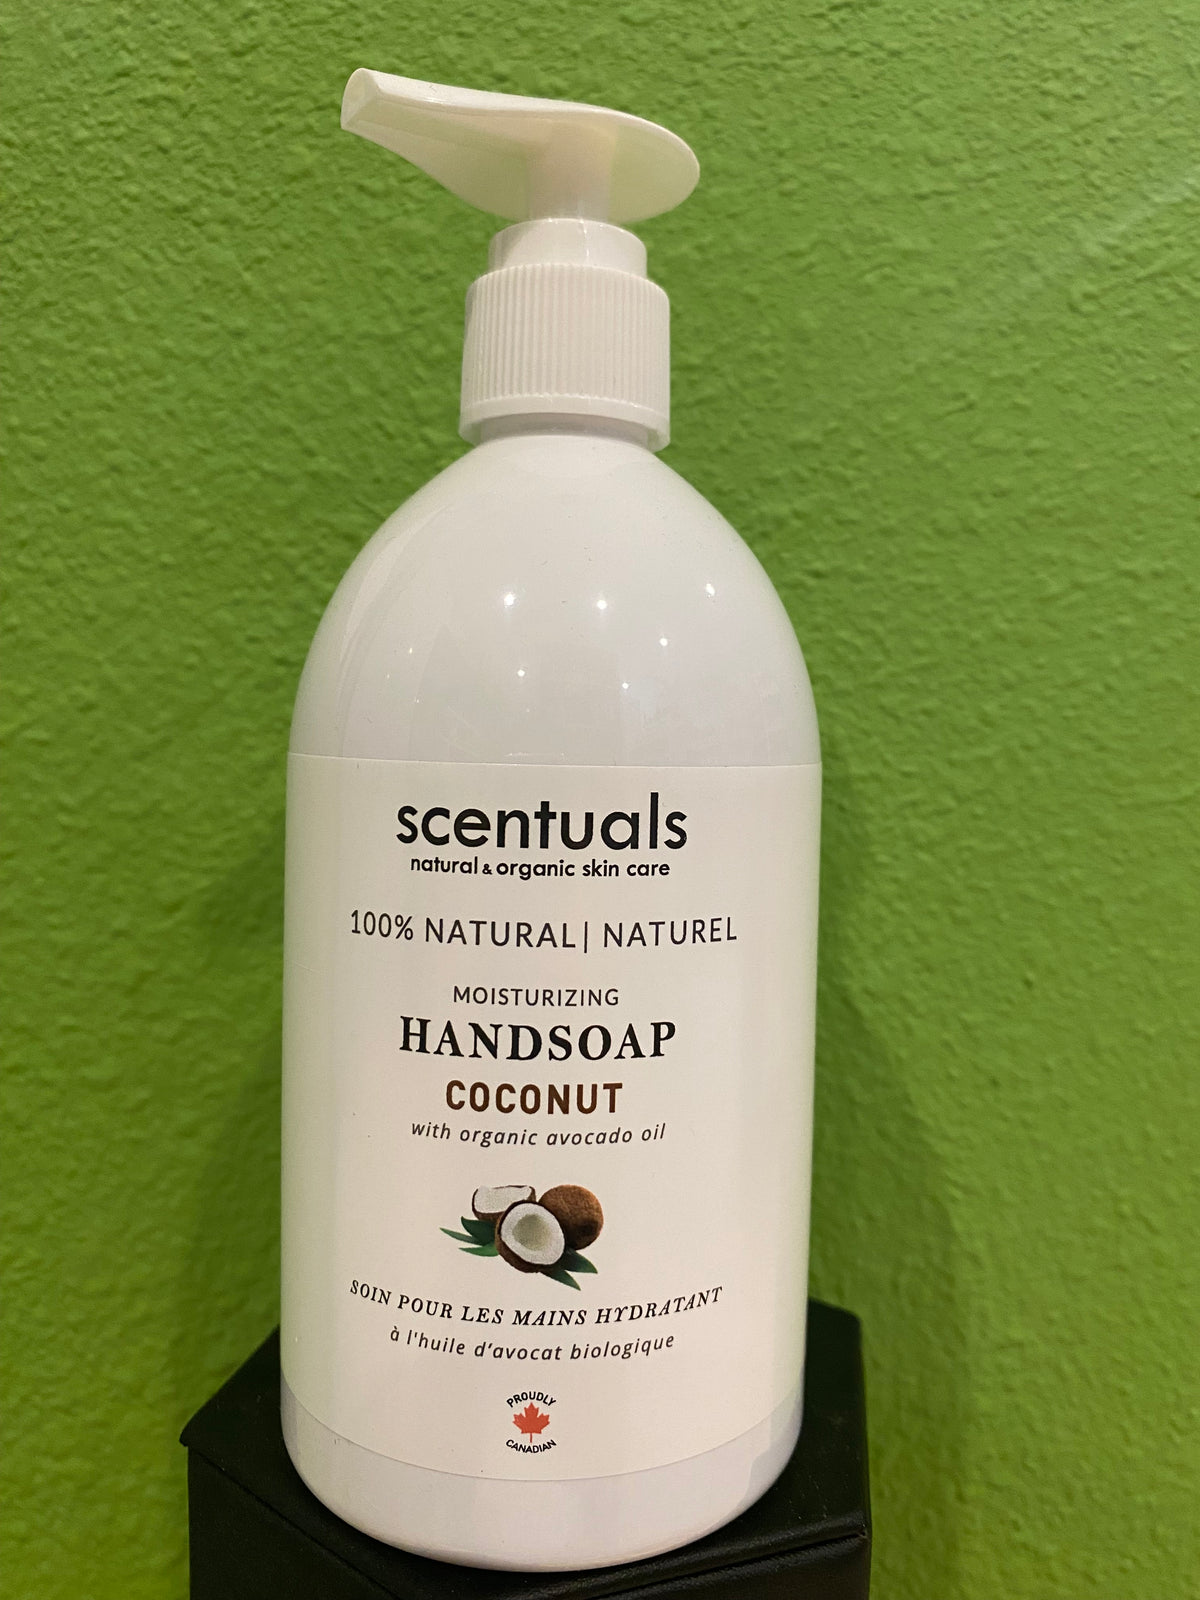 Scentuals Handsoap Coconut